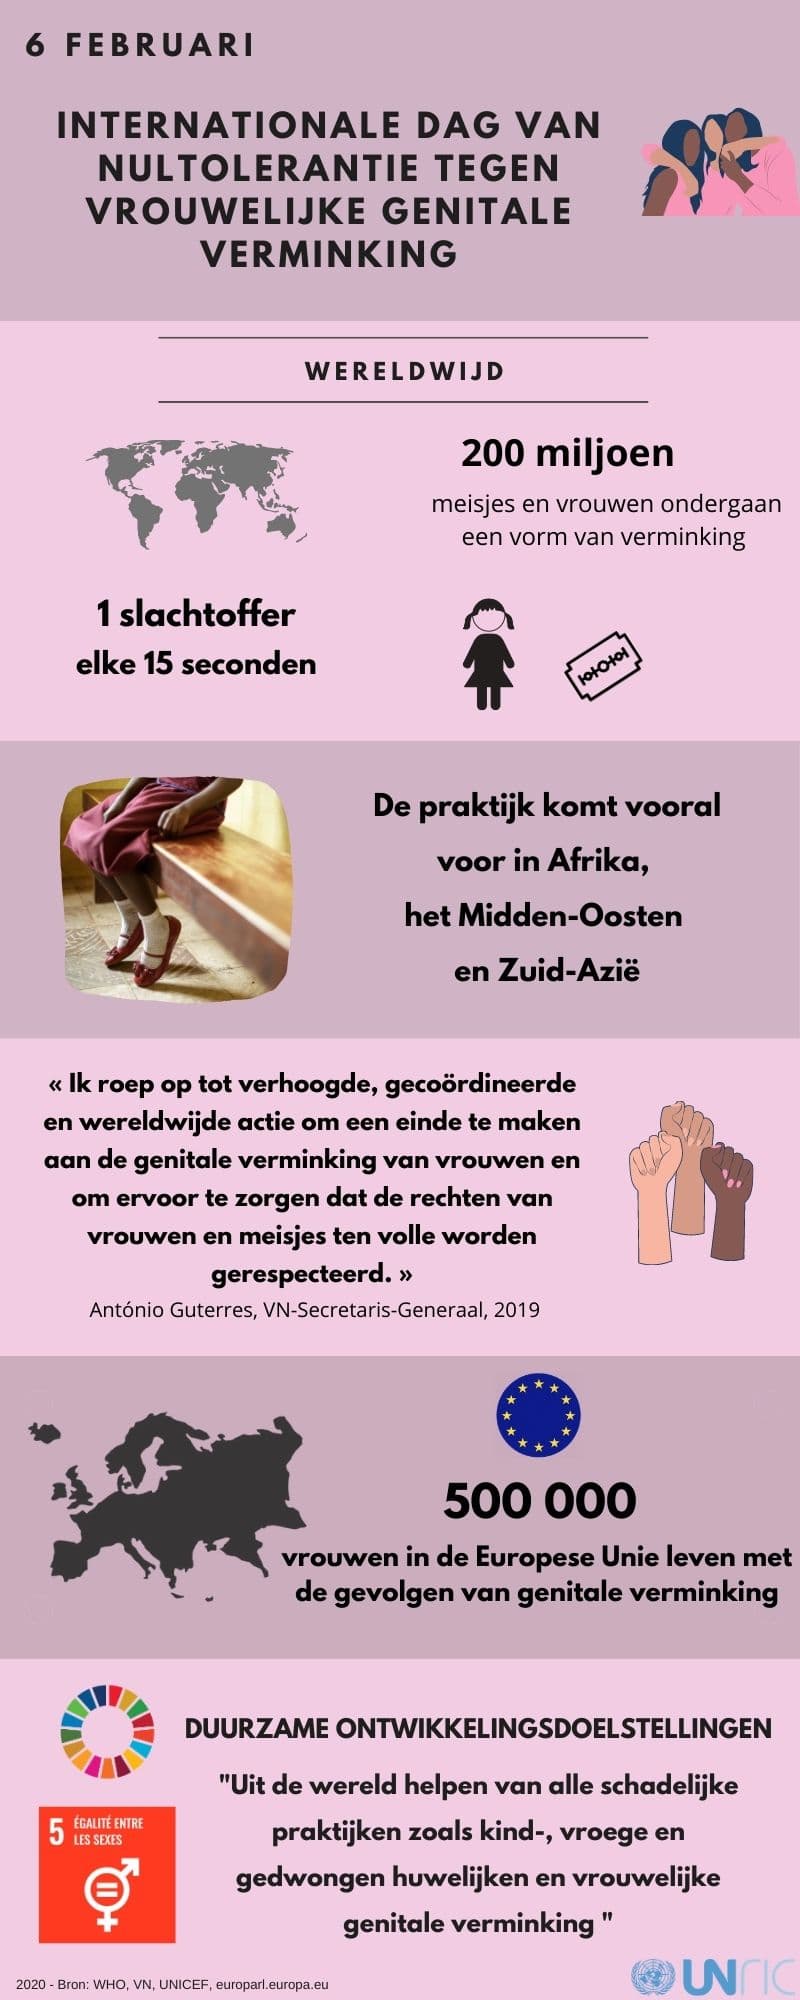 Internationale dag van nultolerantie tegen vrouwelijke genitale verminking (6 februari 2020)